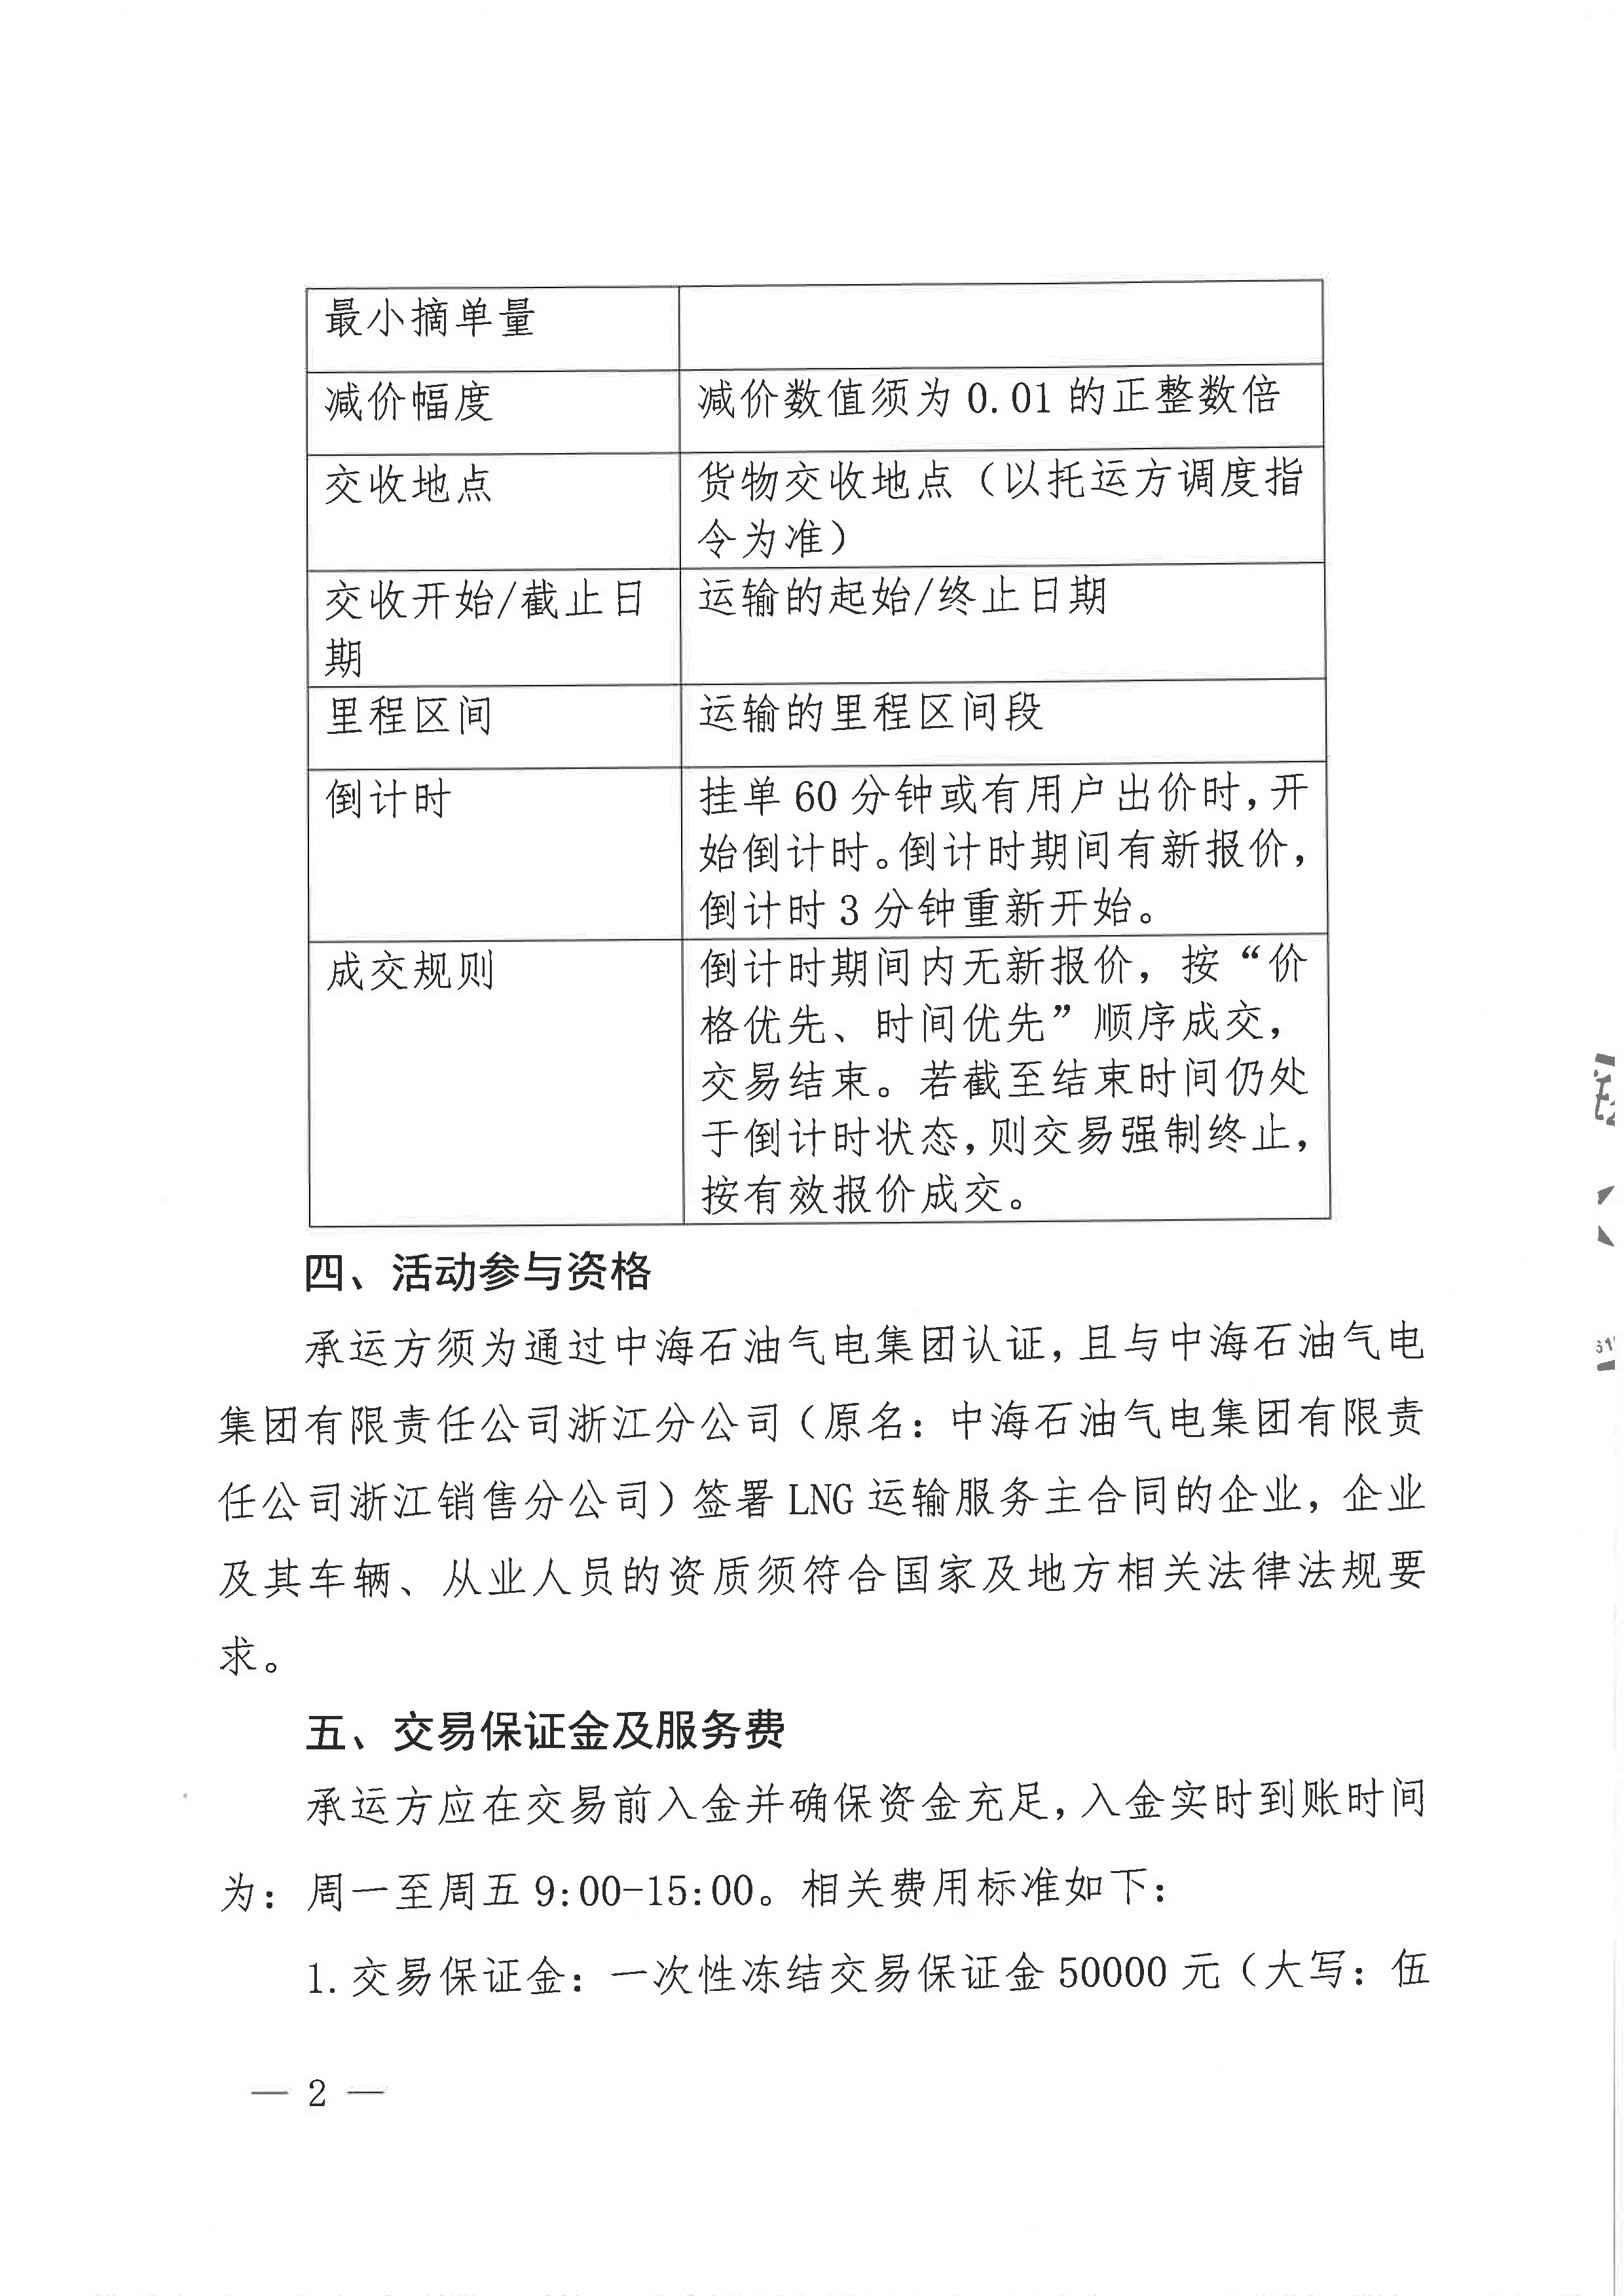 中海石油气电集团浙江分公司关于开展运力竞价交易的公告_页面_2.png